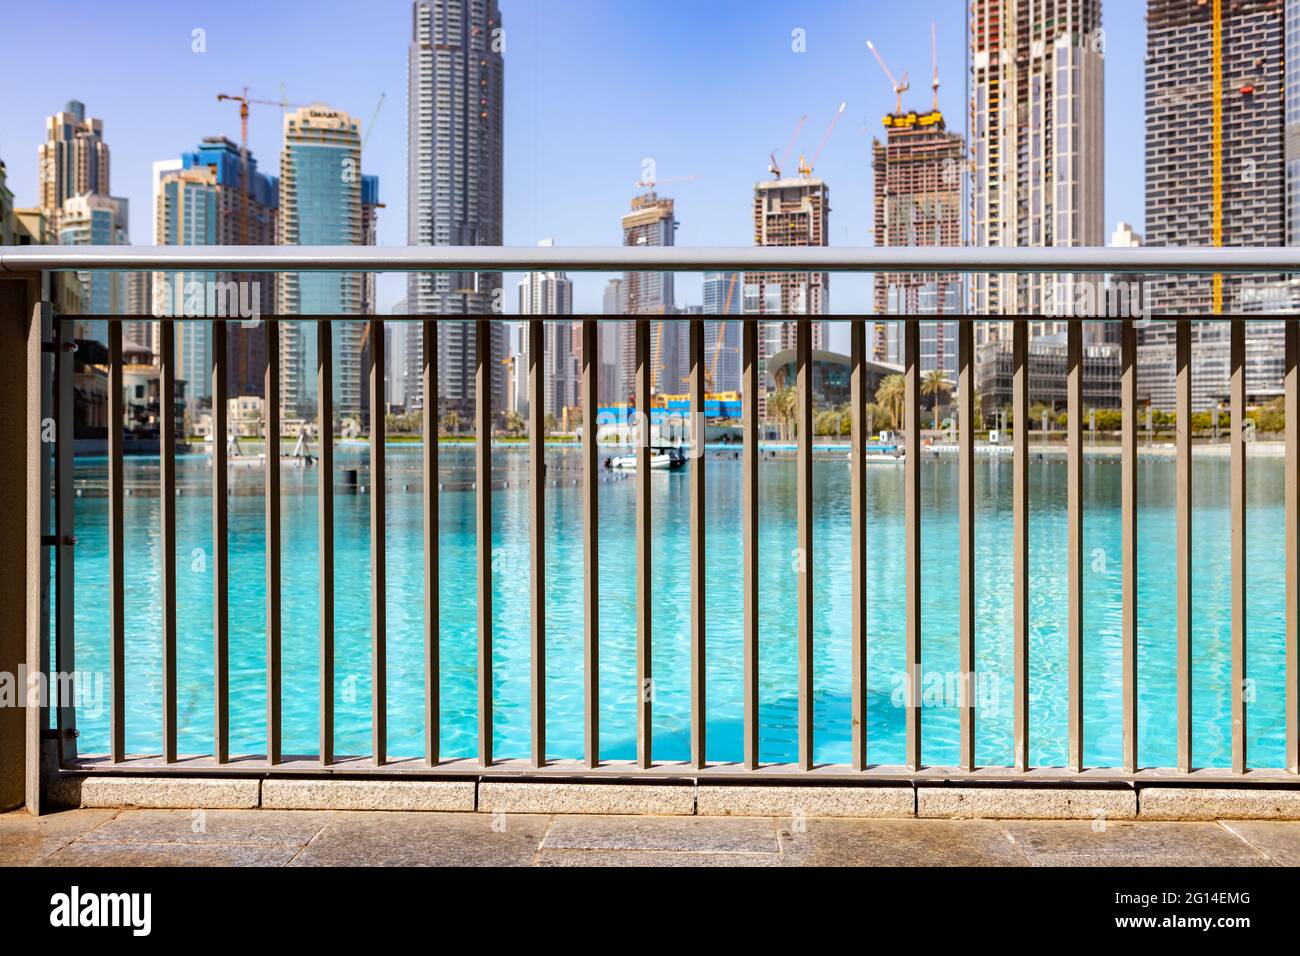 Dubai, UAE - March , 2020: The area of singing fountains near Dubai Mall Stock Photo